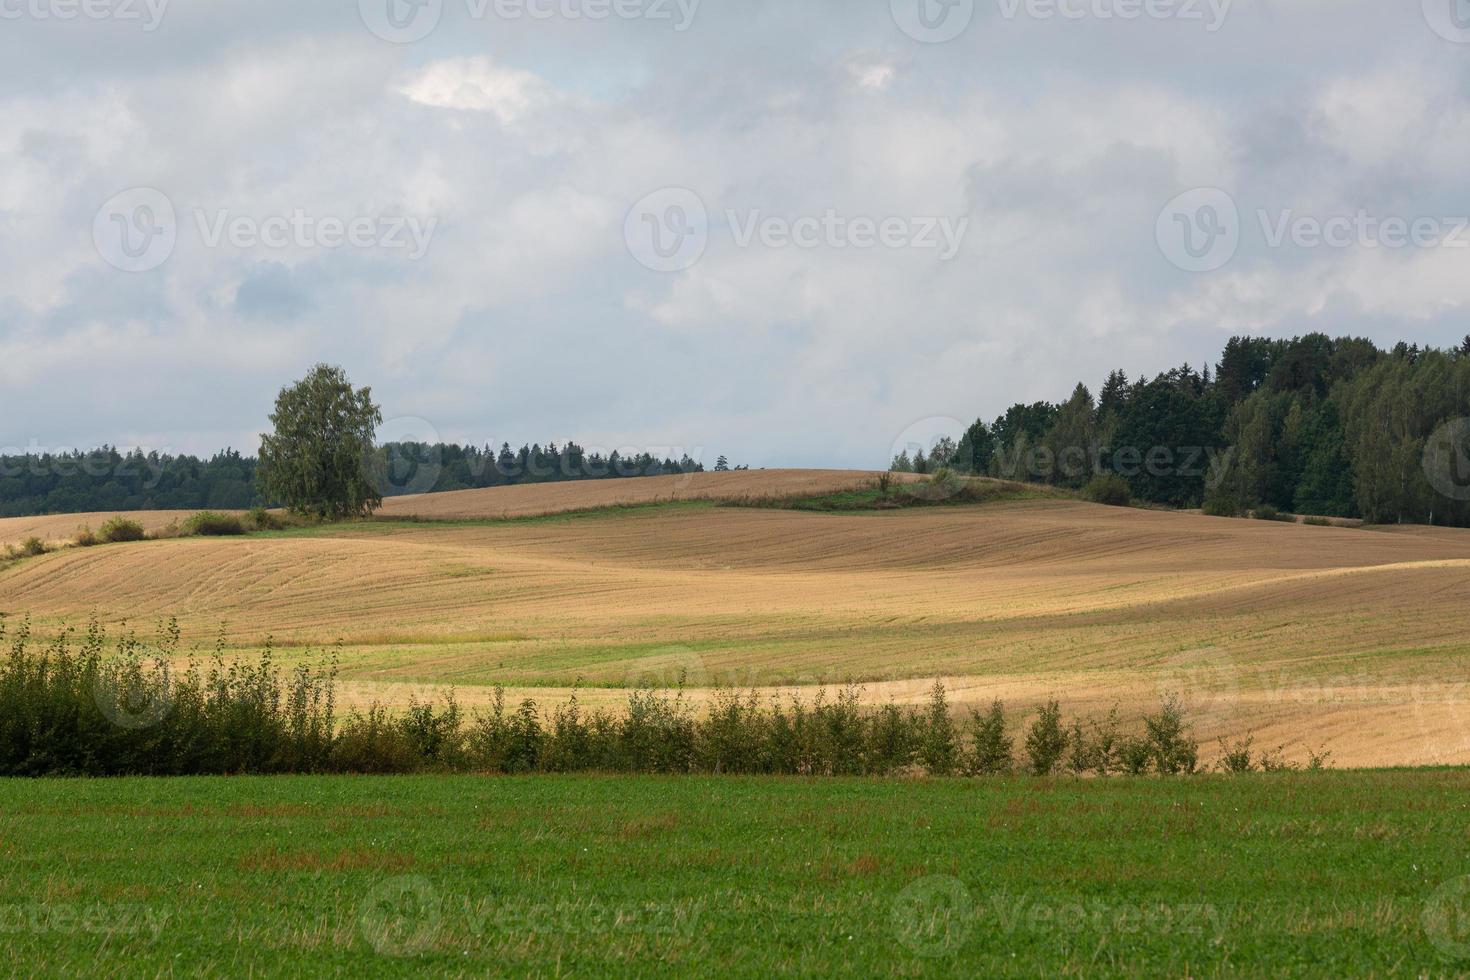 lettiska sommar landskap med moln foto